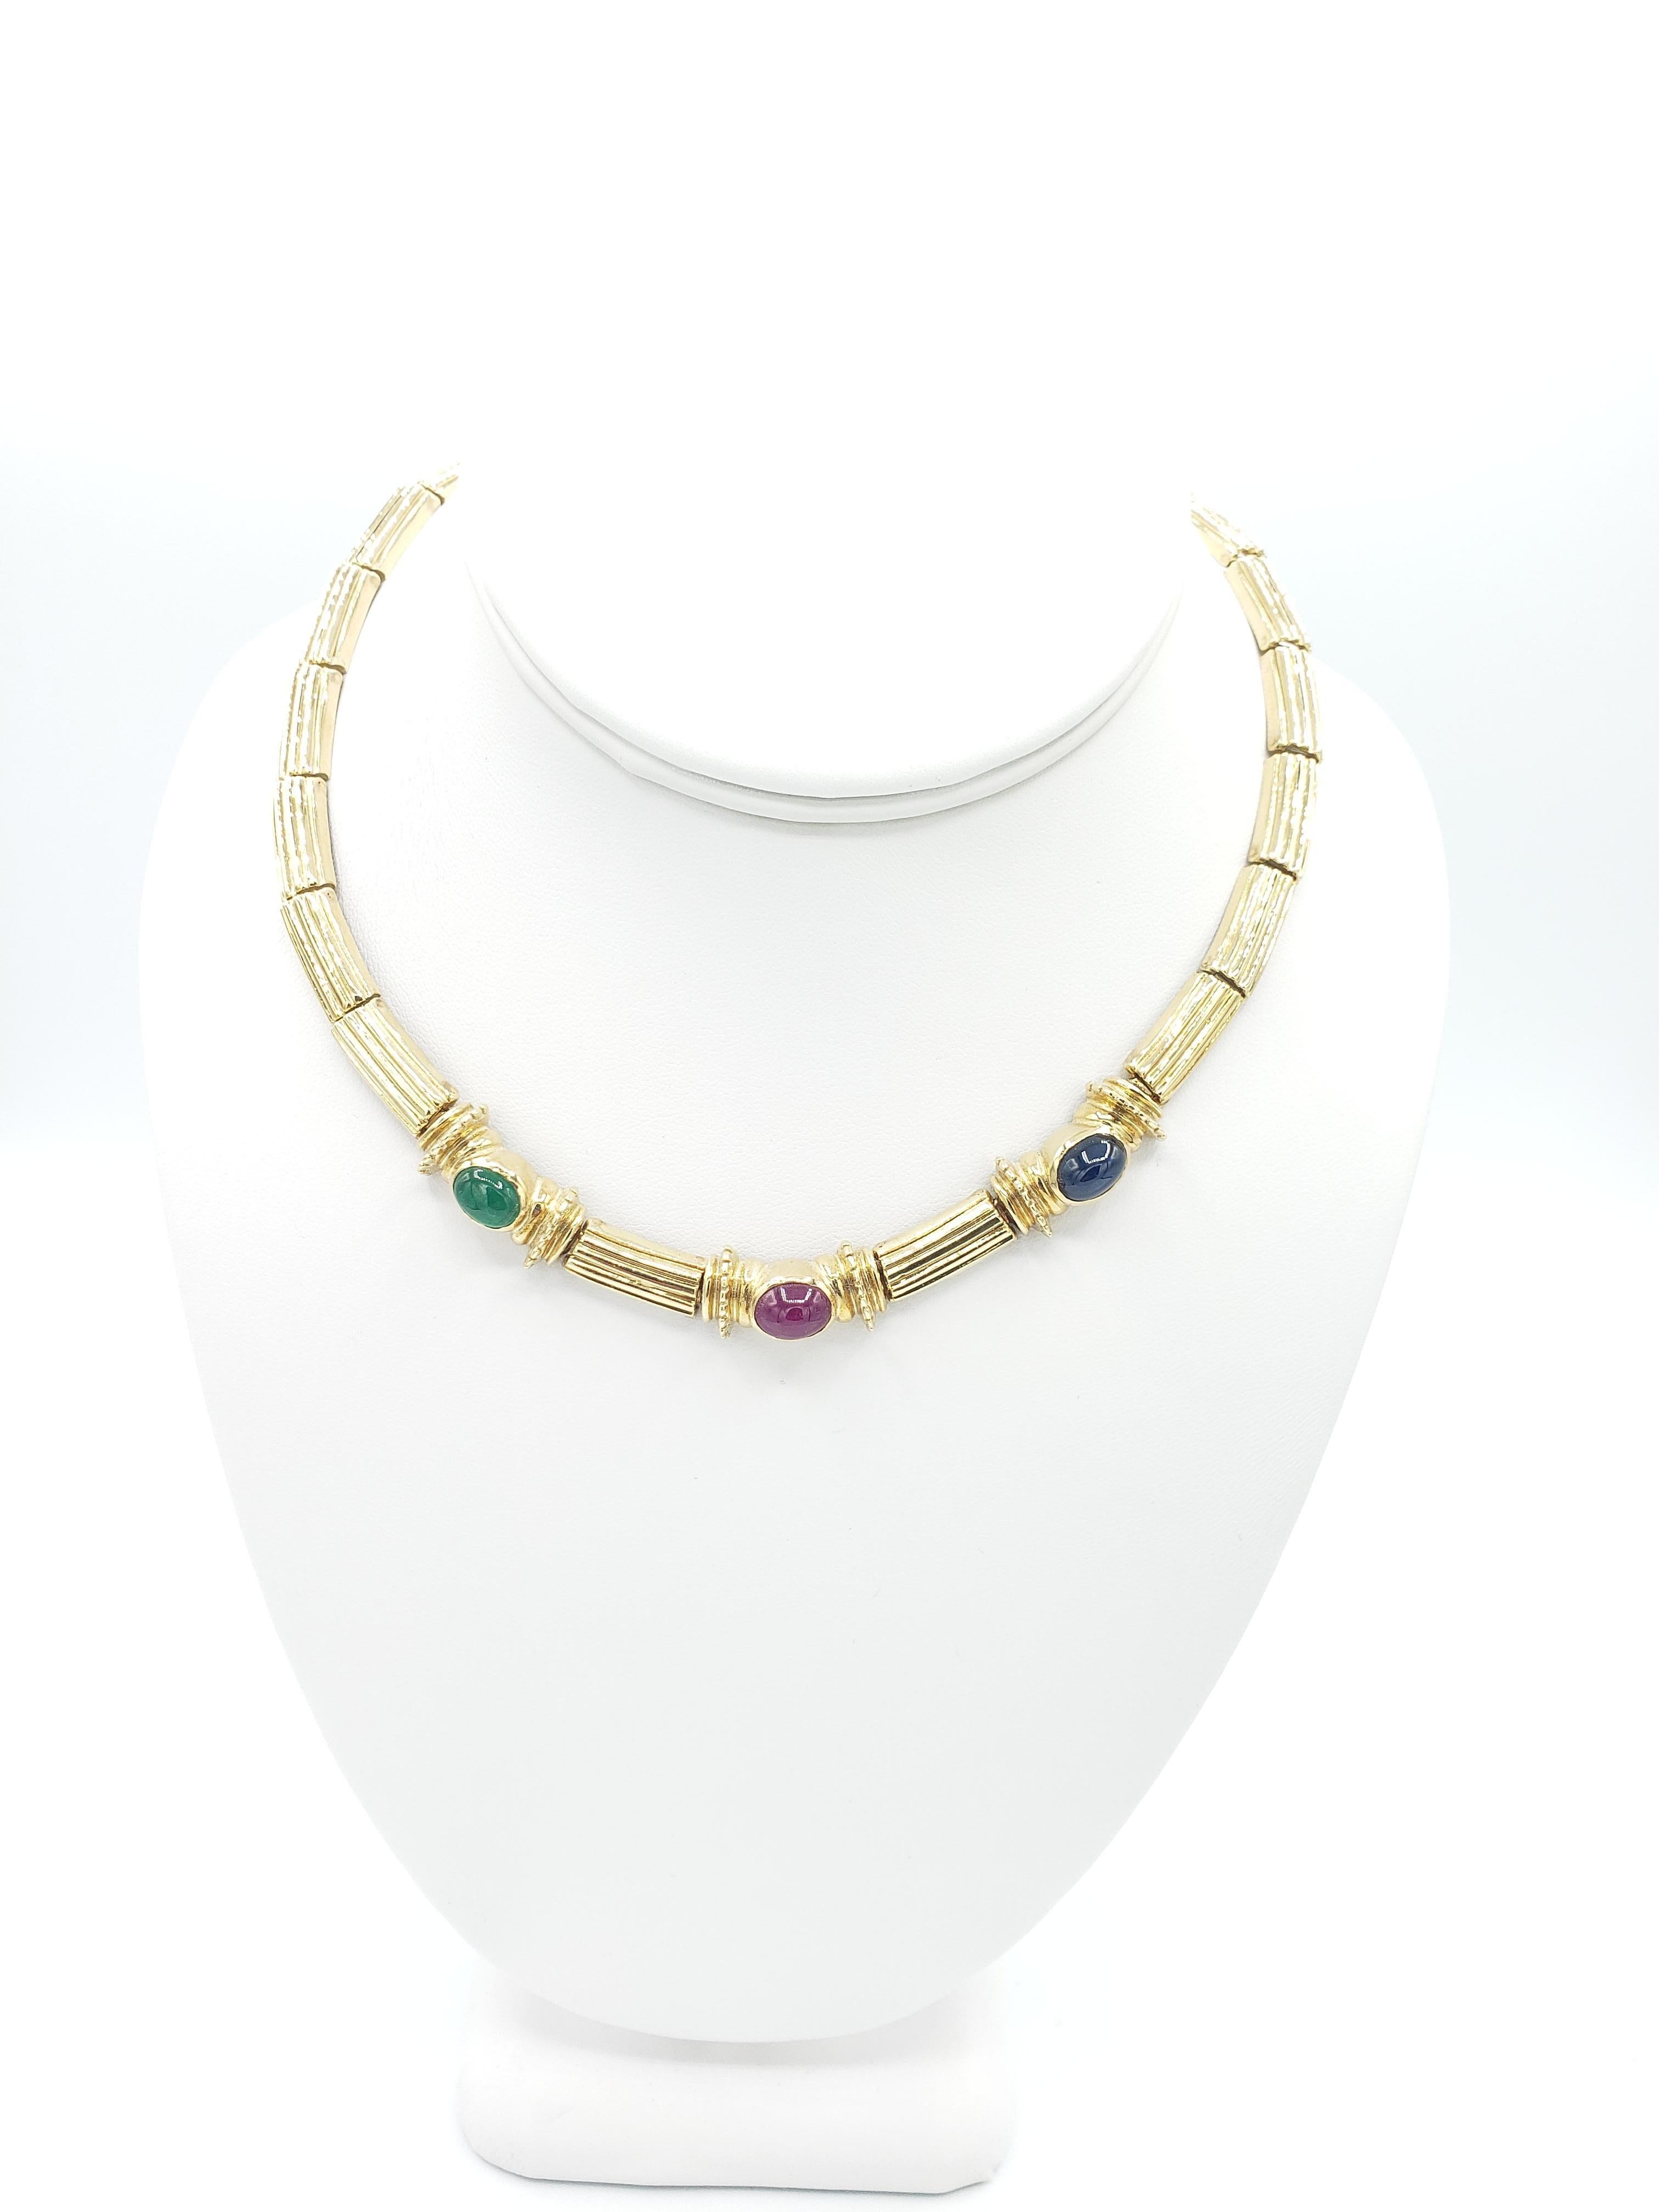 Verleihen Sie Ihrer Schmucksammlung einen Hauch von Luxus mit dieser exquisiten Halskette von LaFrancee. Dieses aus massivem 14-karätigem Gelbgold gefertigte Schmuckstück enthält drei natürliche Edelsteine in ovaler Form - Rubin, Saphir und Smaragd.